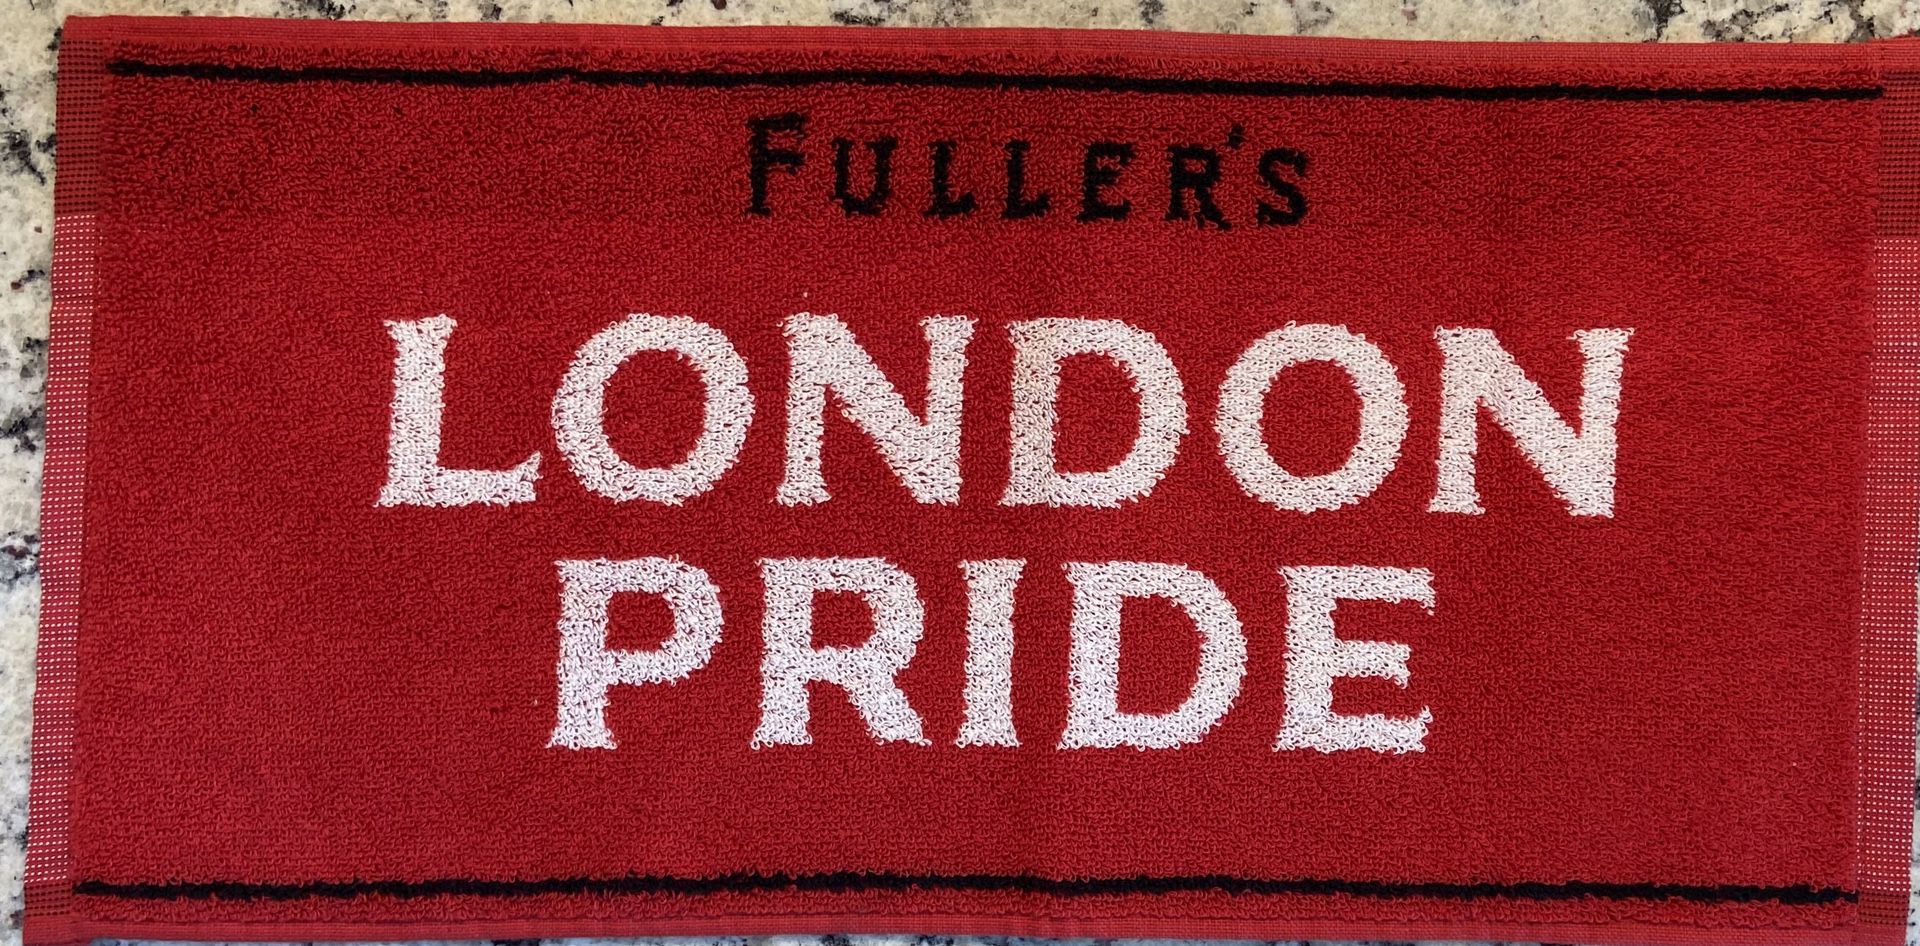 London Pride Bar Runner/Mat (or towel) - England